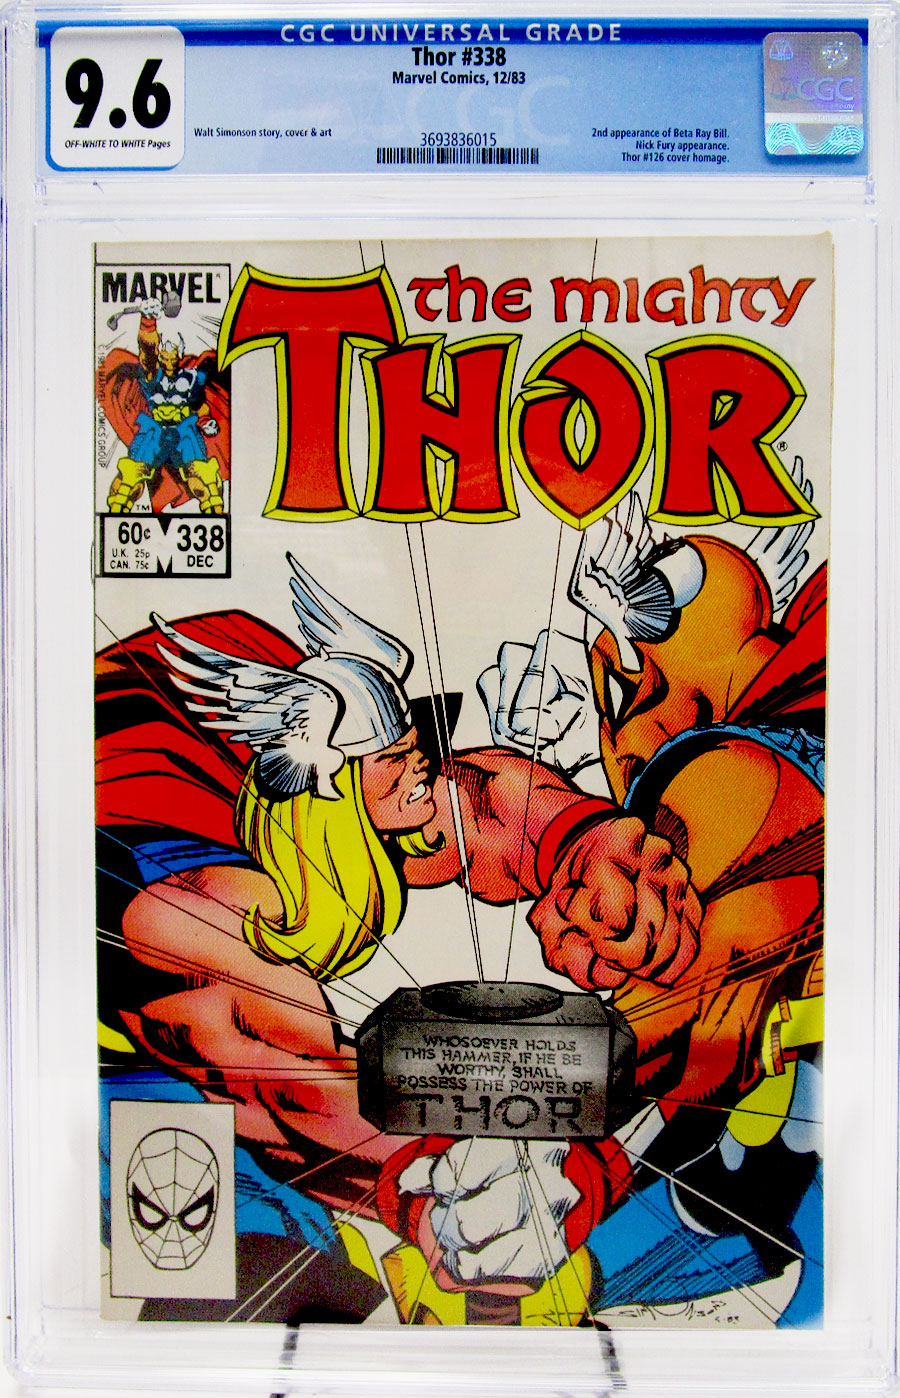 Thor Vol 1 #338 Cover C CGC 9.6